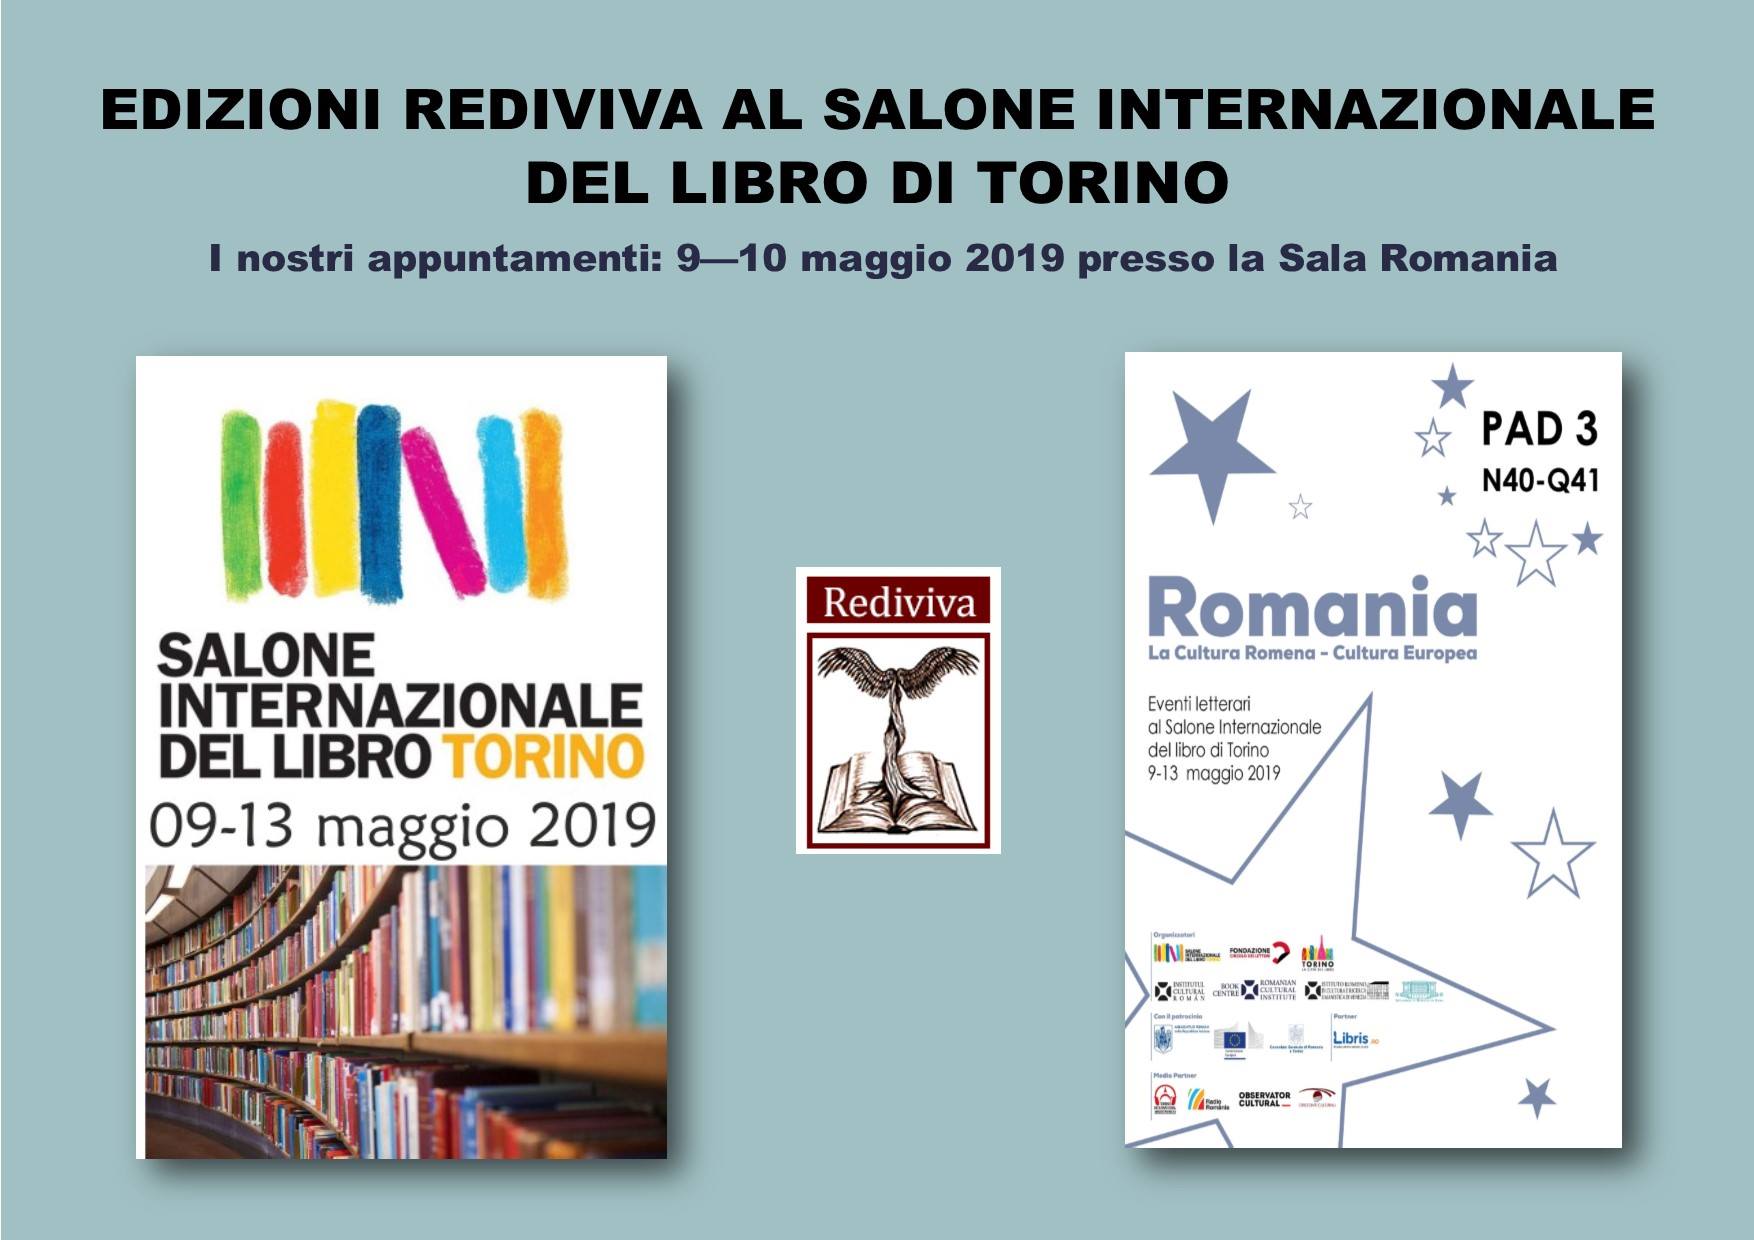 Rediviva edizioni al Salone Internazionale del Libro di Torino. Appuntamenti 9-10 maggio 2019